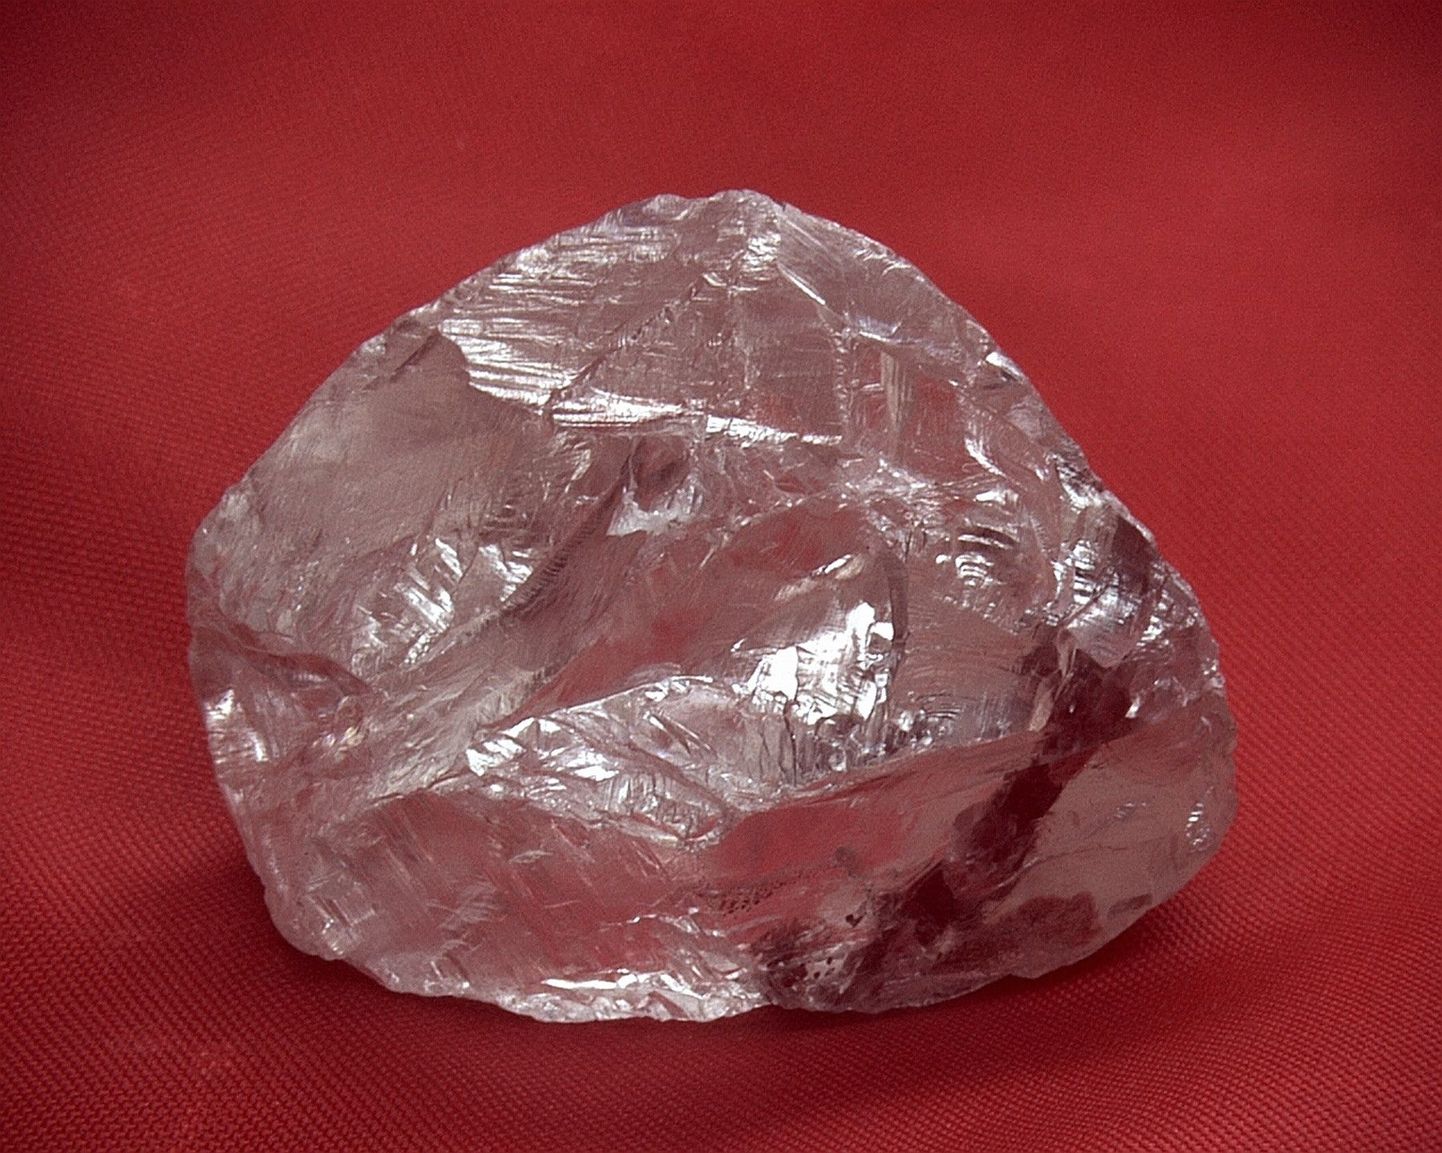 А этот алмаз "всего лишь" в 158,2 карата, стоимость его оценивается в 1,5 миллионна долларов, найдет в прошлом году в шахте Нюрба, республики Саха, Якутия  (AK Alrosa OAO press)